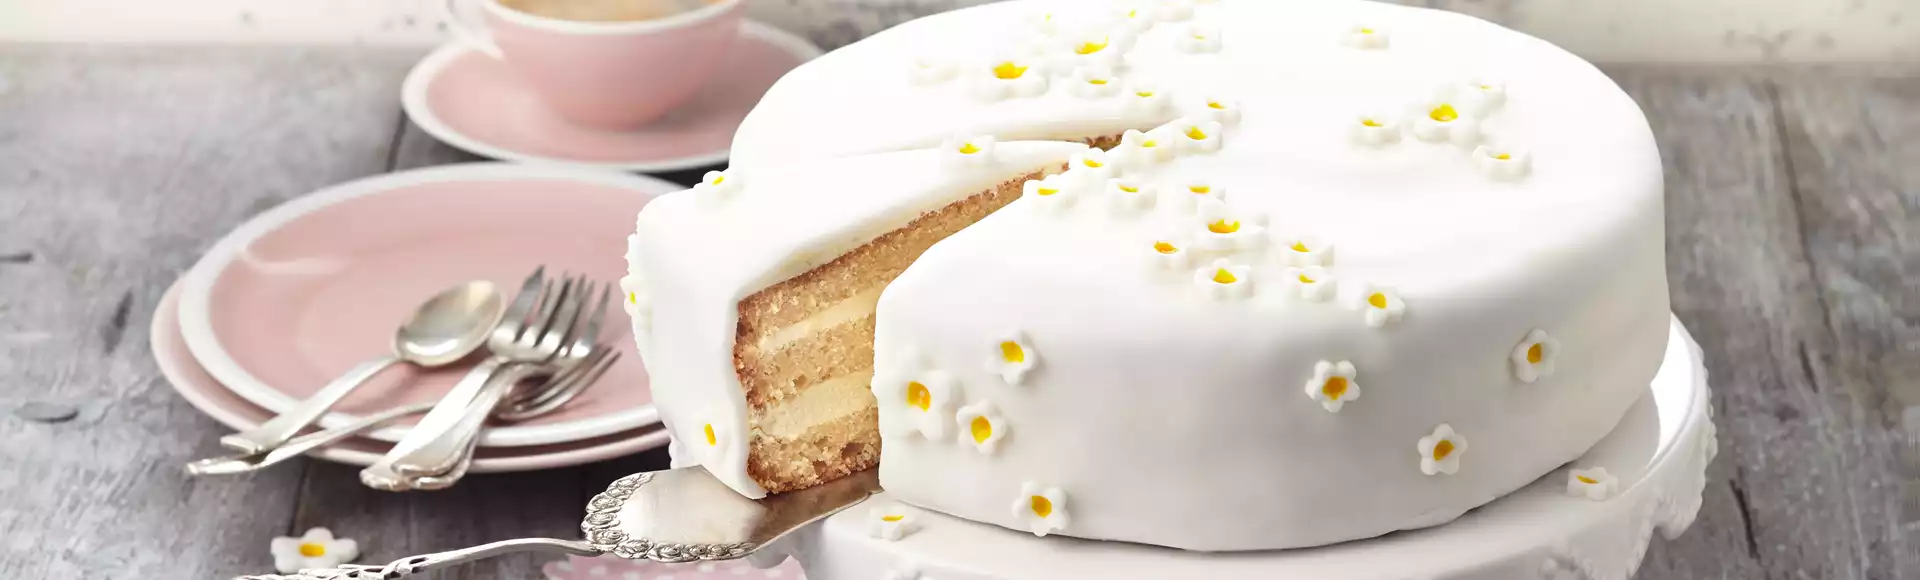 Rollfondant Weiß (250g), Fondantdecke Weiß für Kuchen, Torten, Cupcake